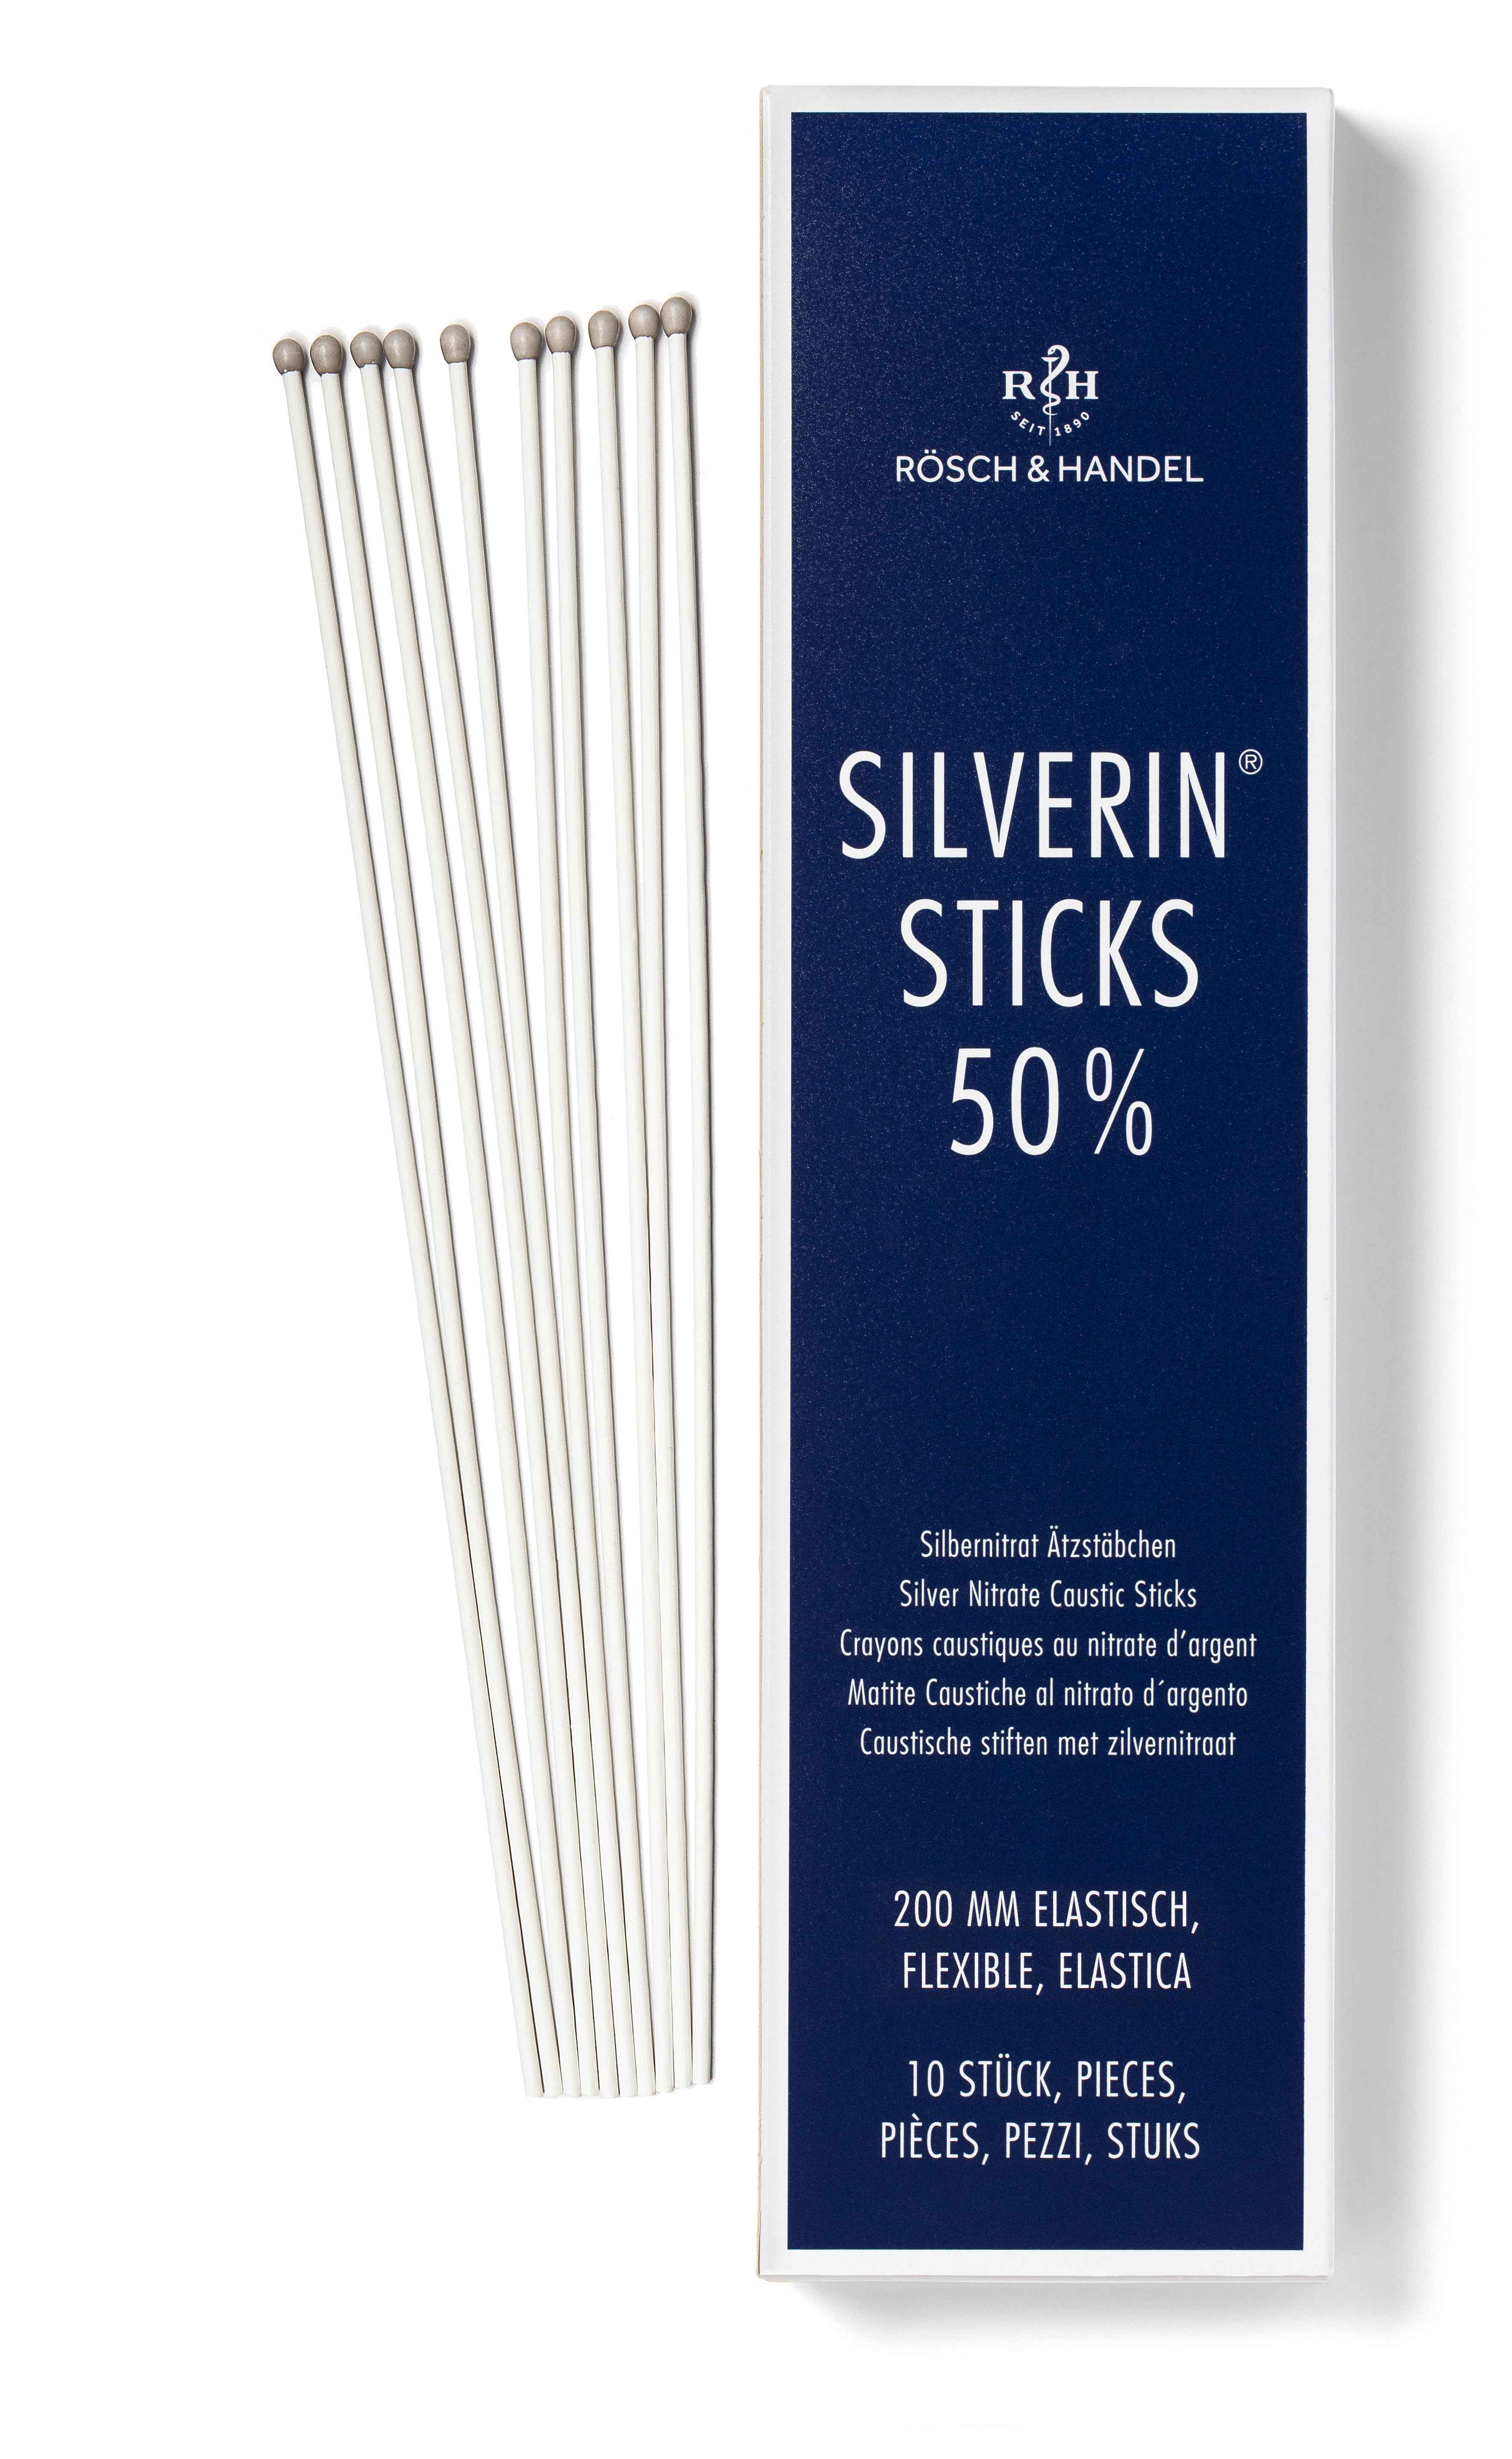 SILVERIN STICKS Matite caustiche al nitrato d’argento 50%